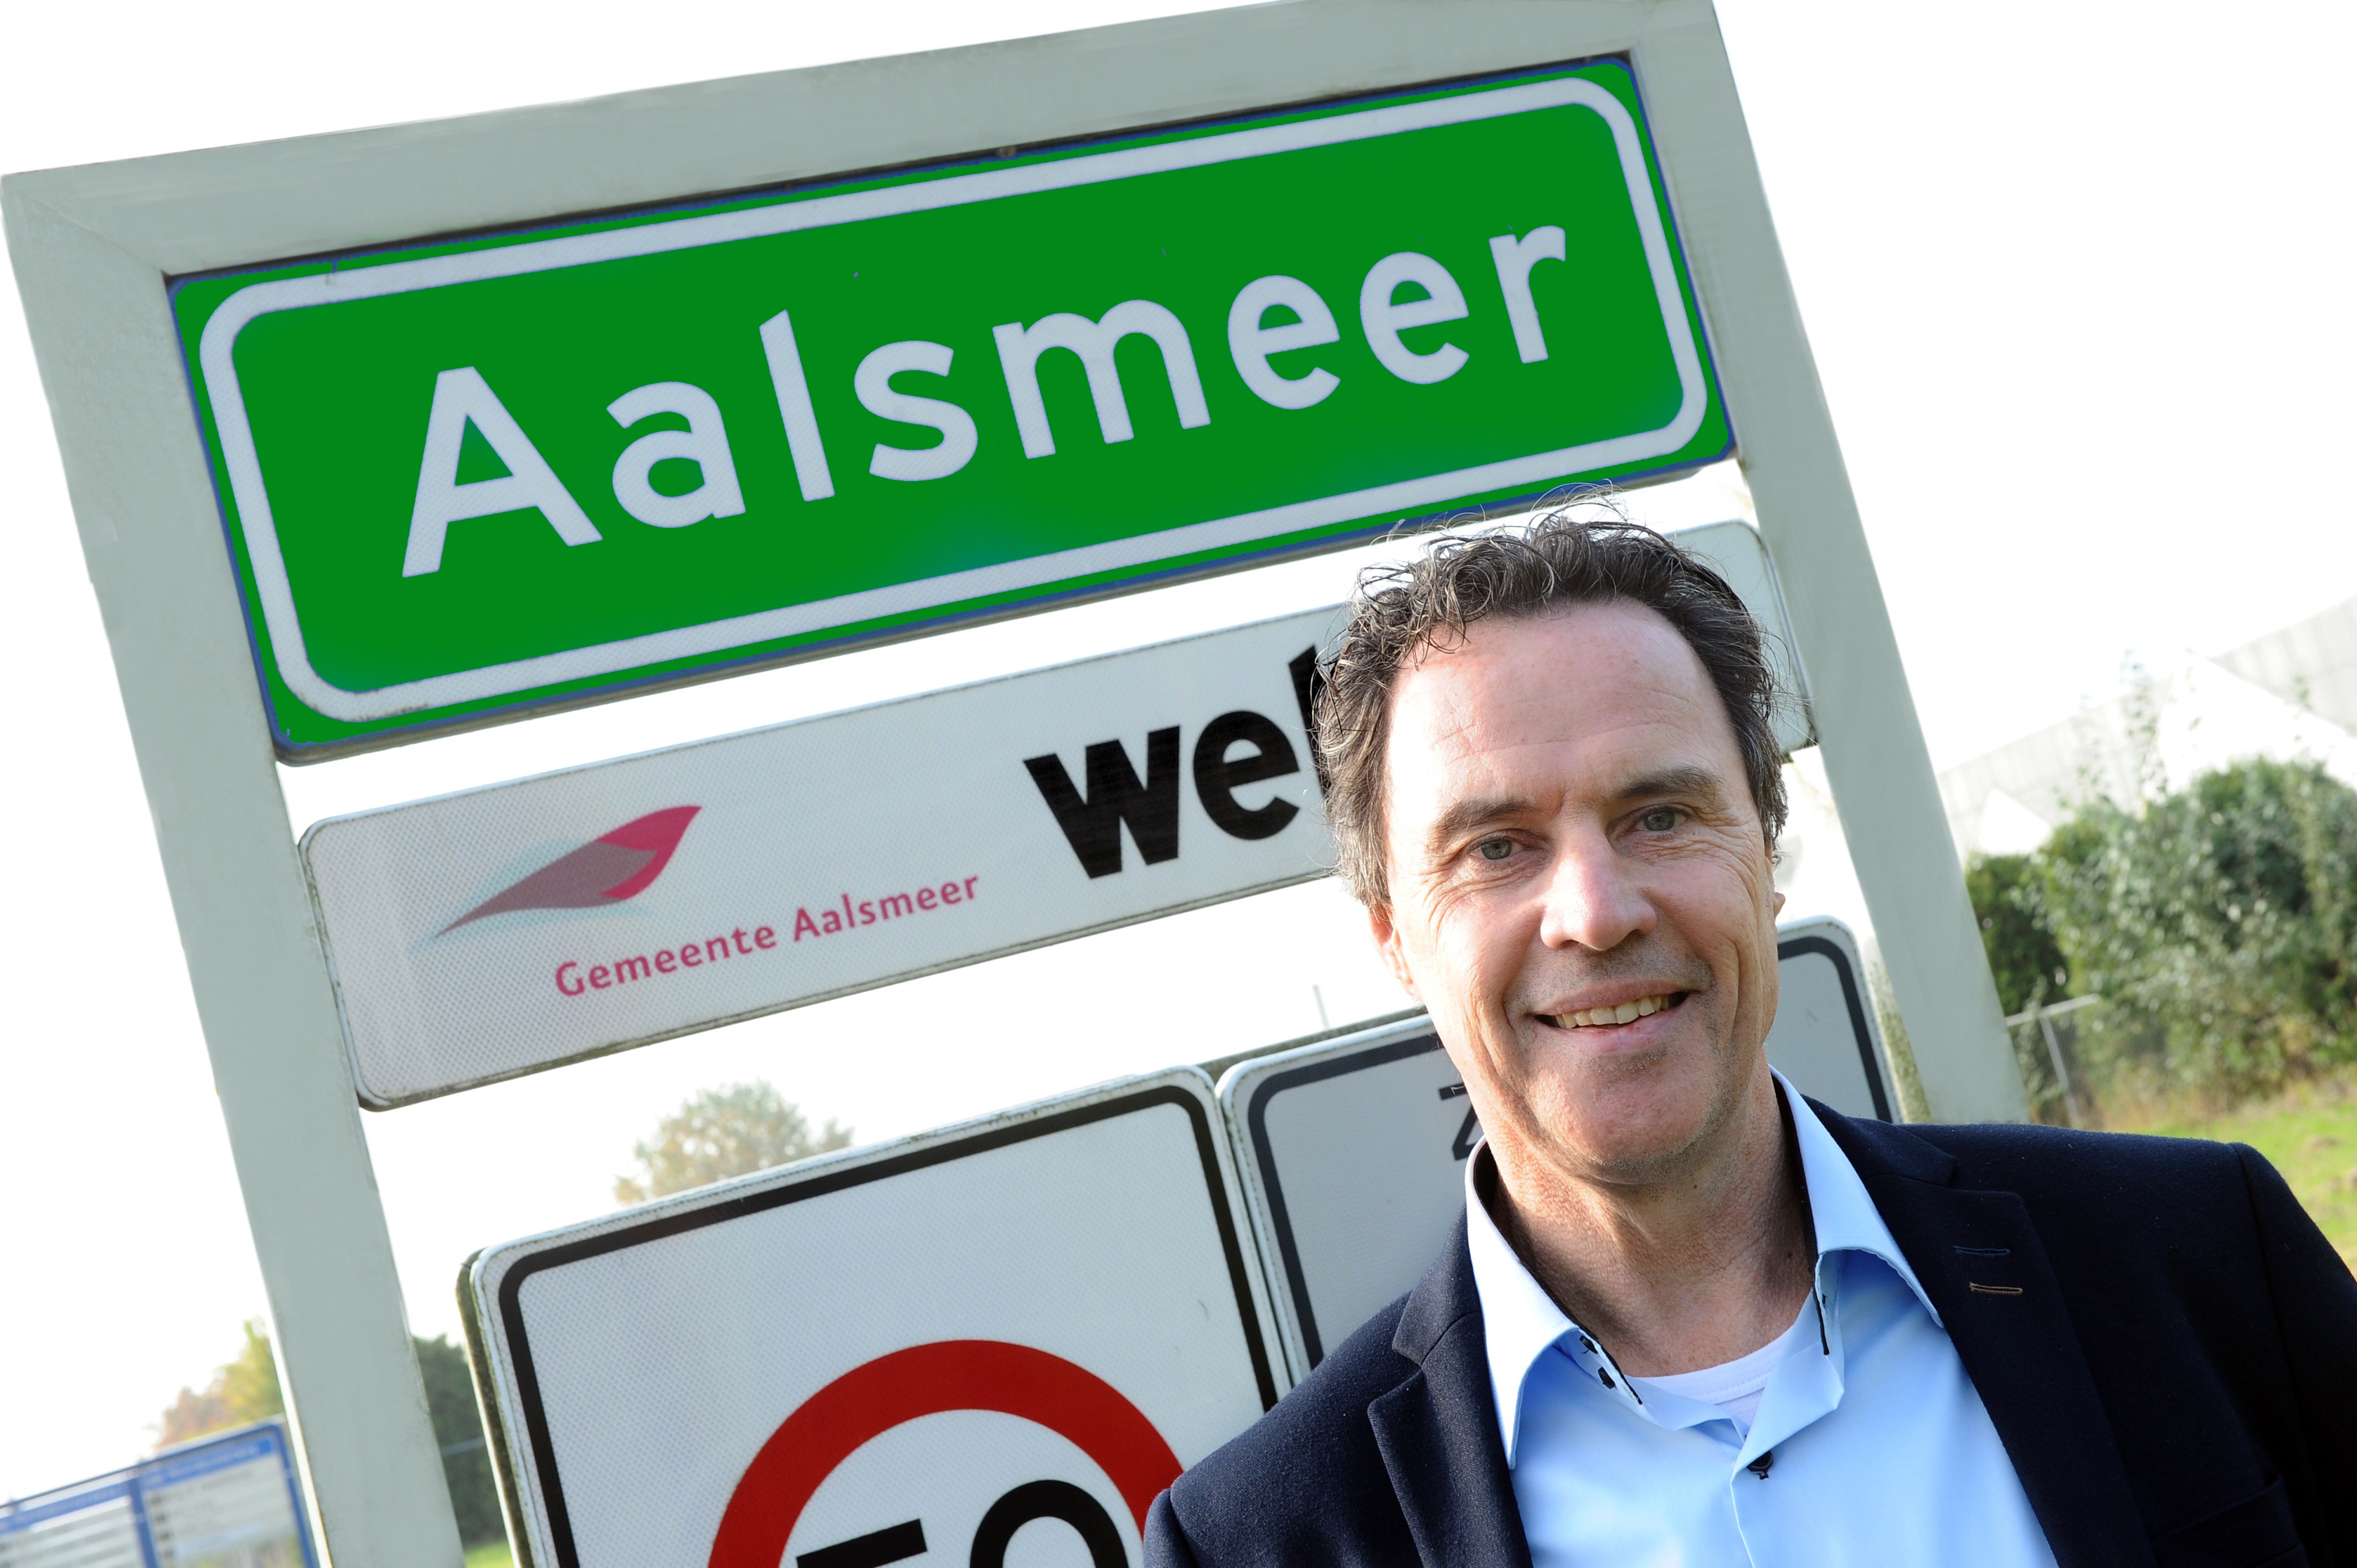 Automotive ondernemer wil dat Aalsmeer de eerste groene gemeente van Nederland wordt